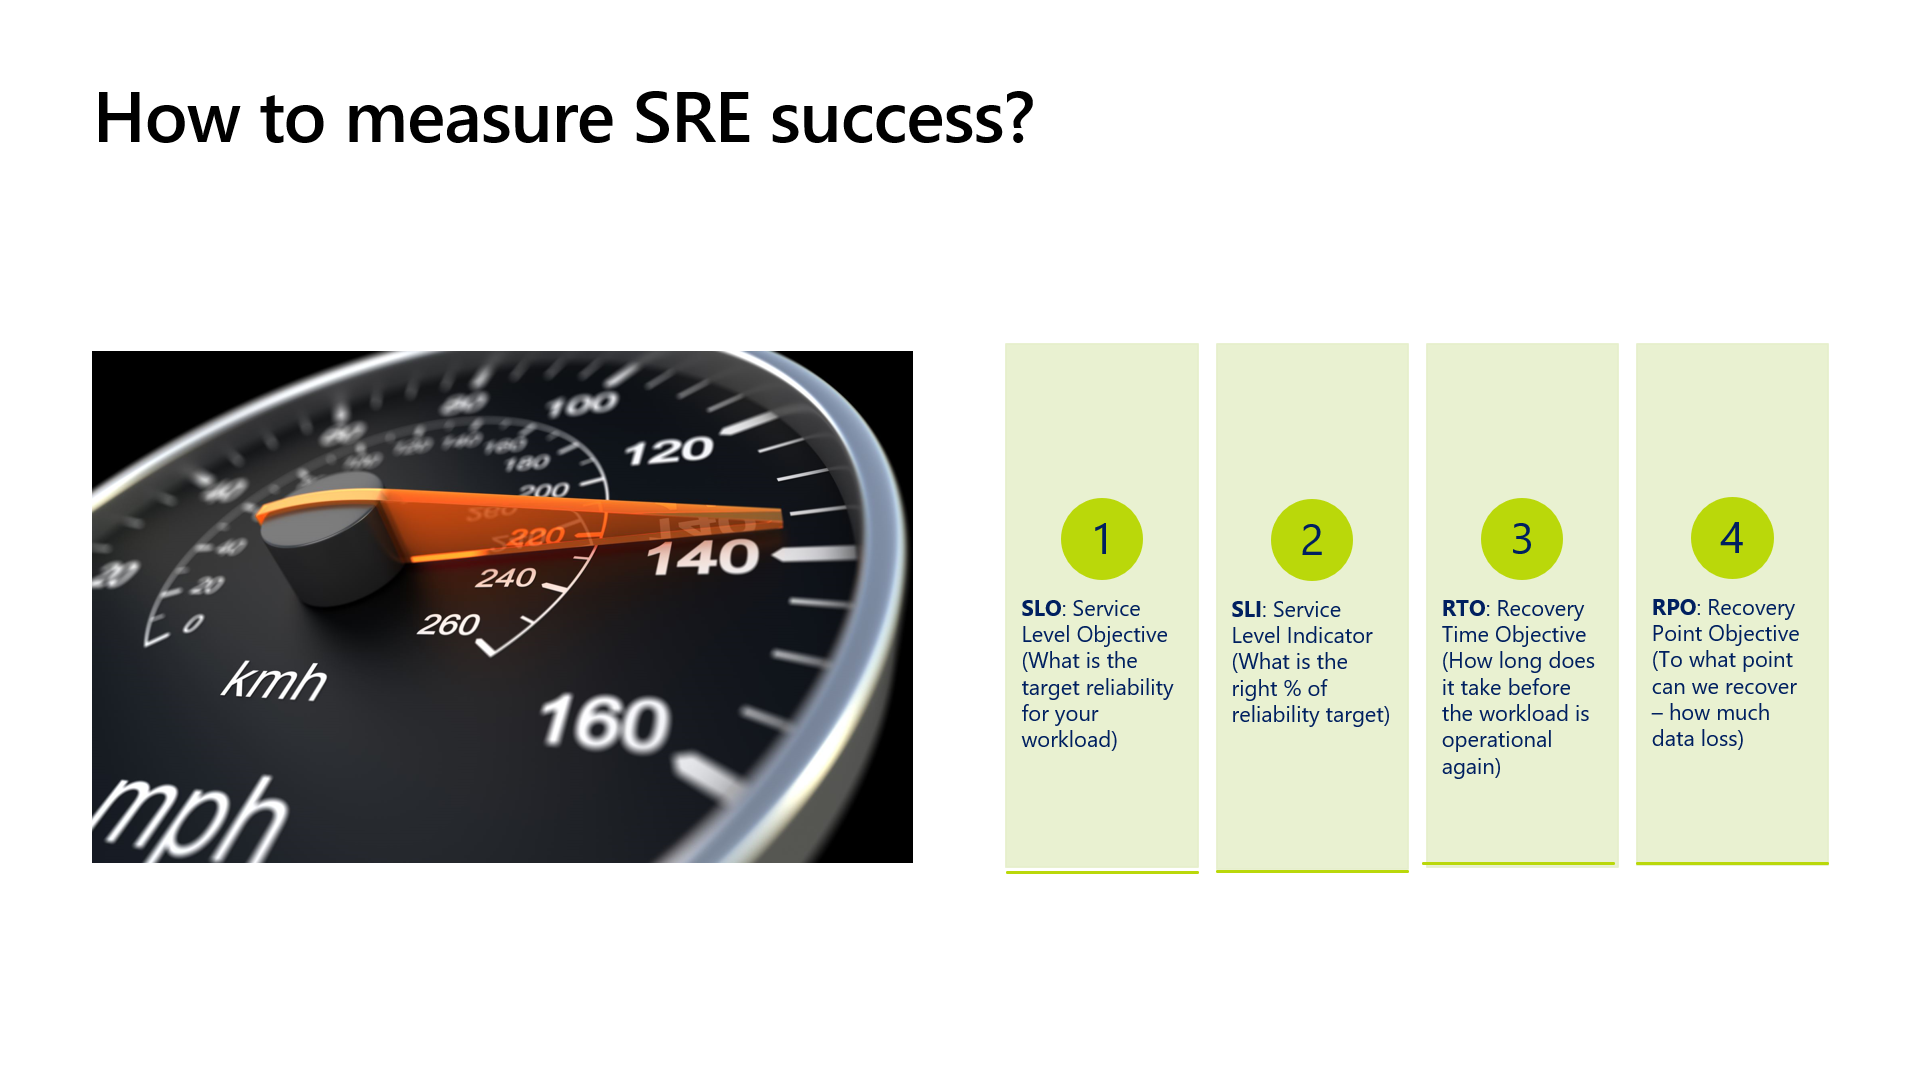 Measure SRE success